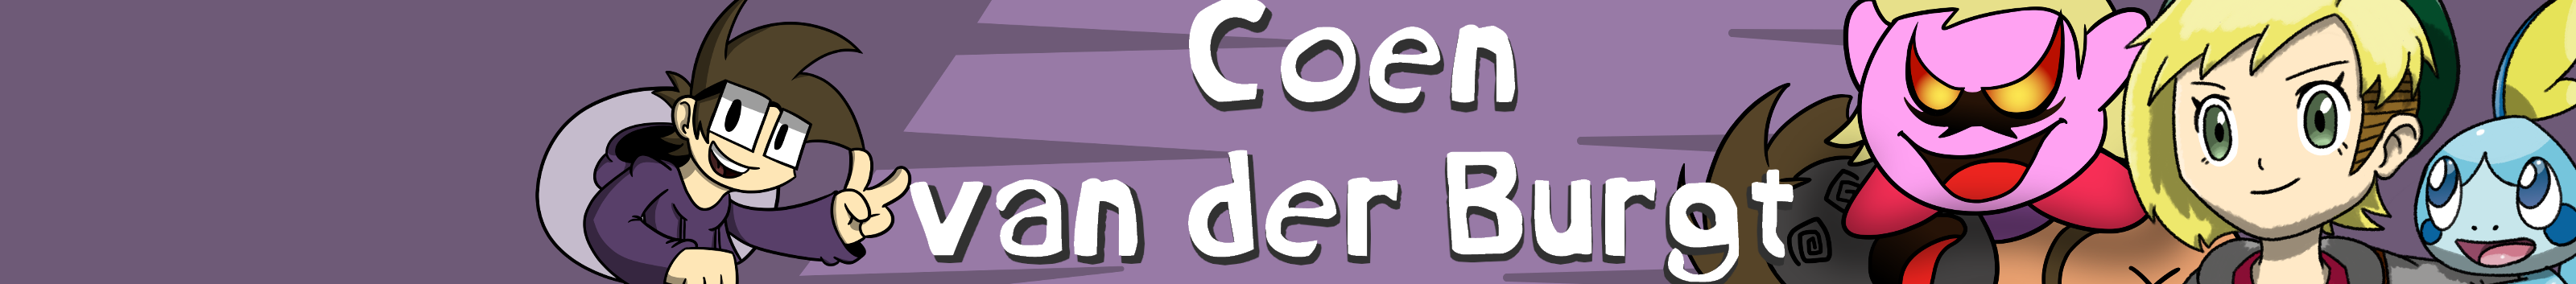 Coen van der Burgt's profile banner